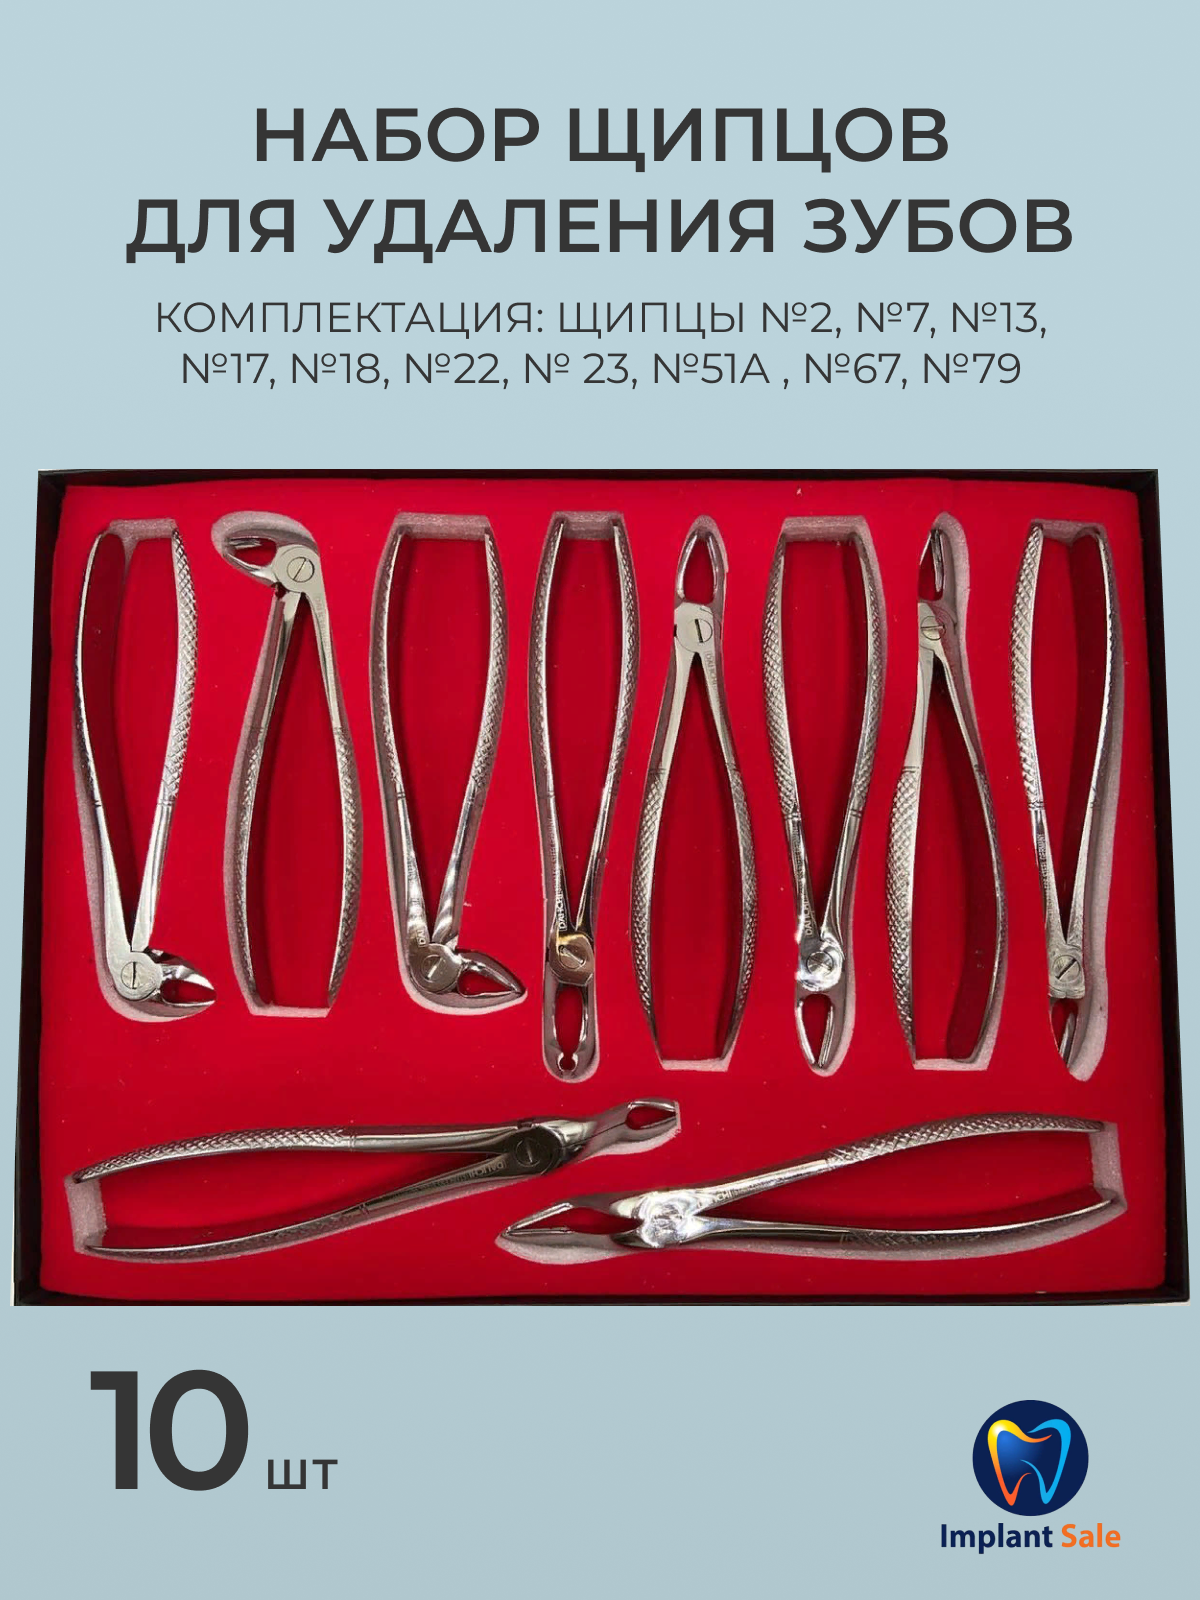 Набор щипцов для удаления зубов (10 шт.)